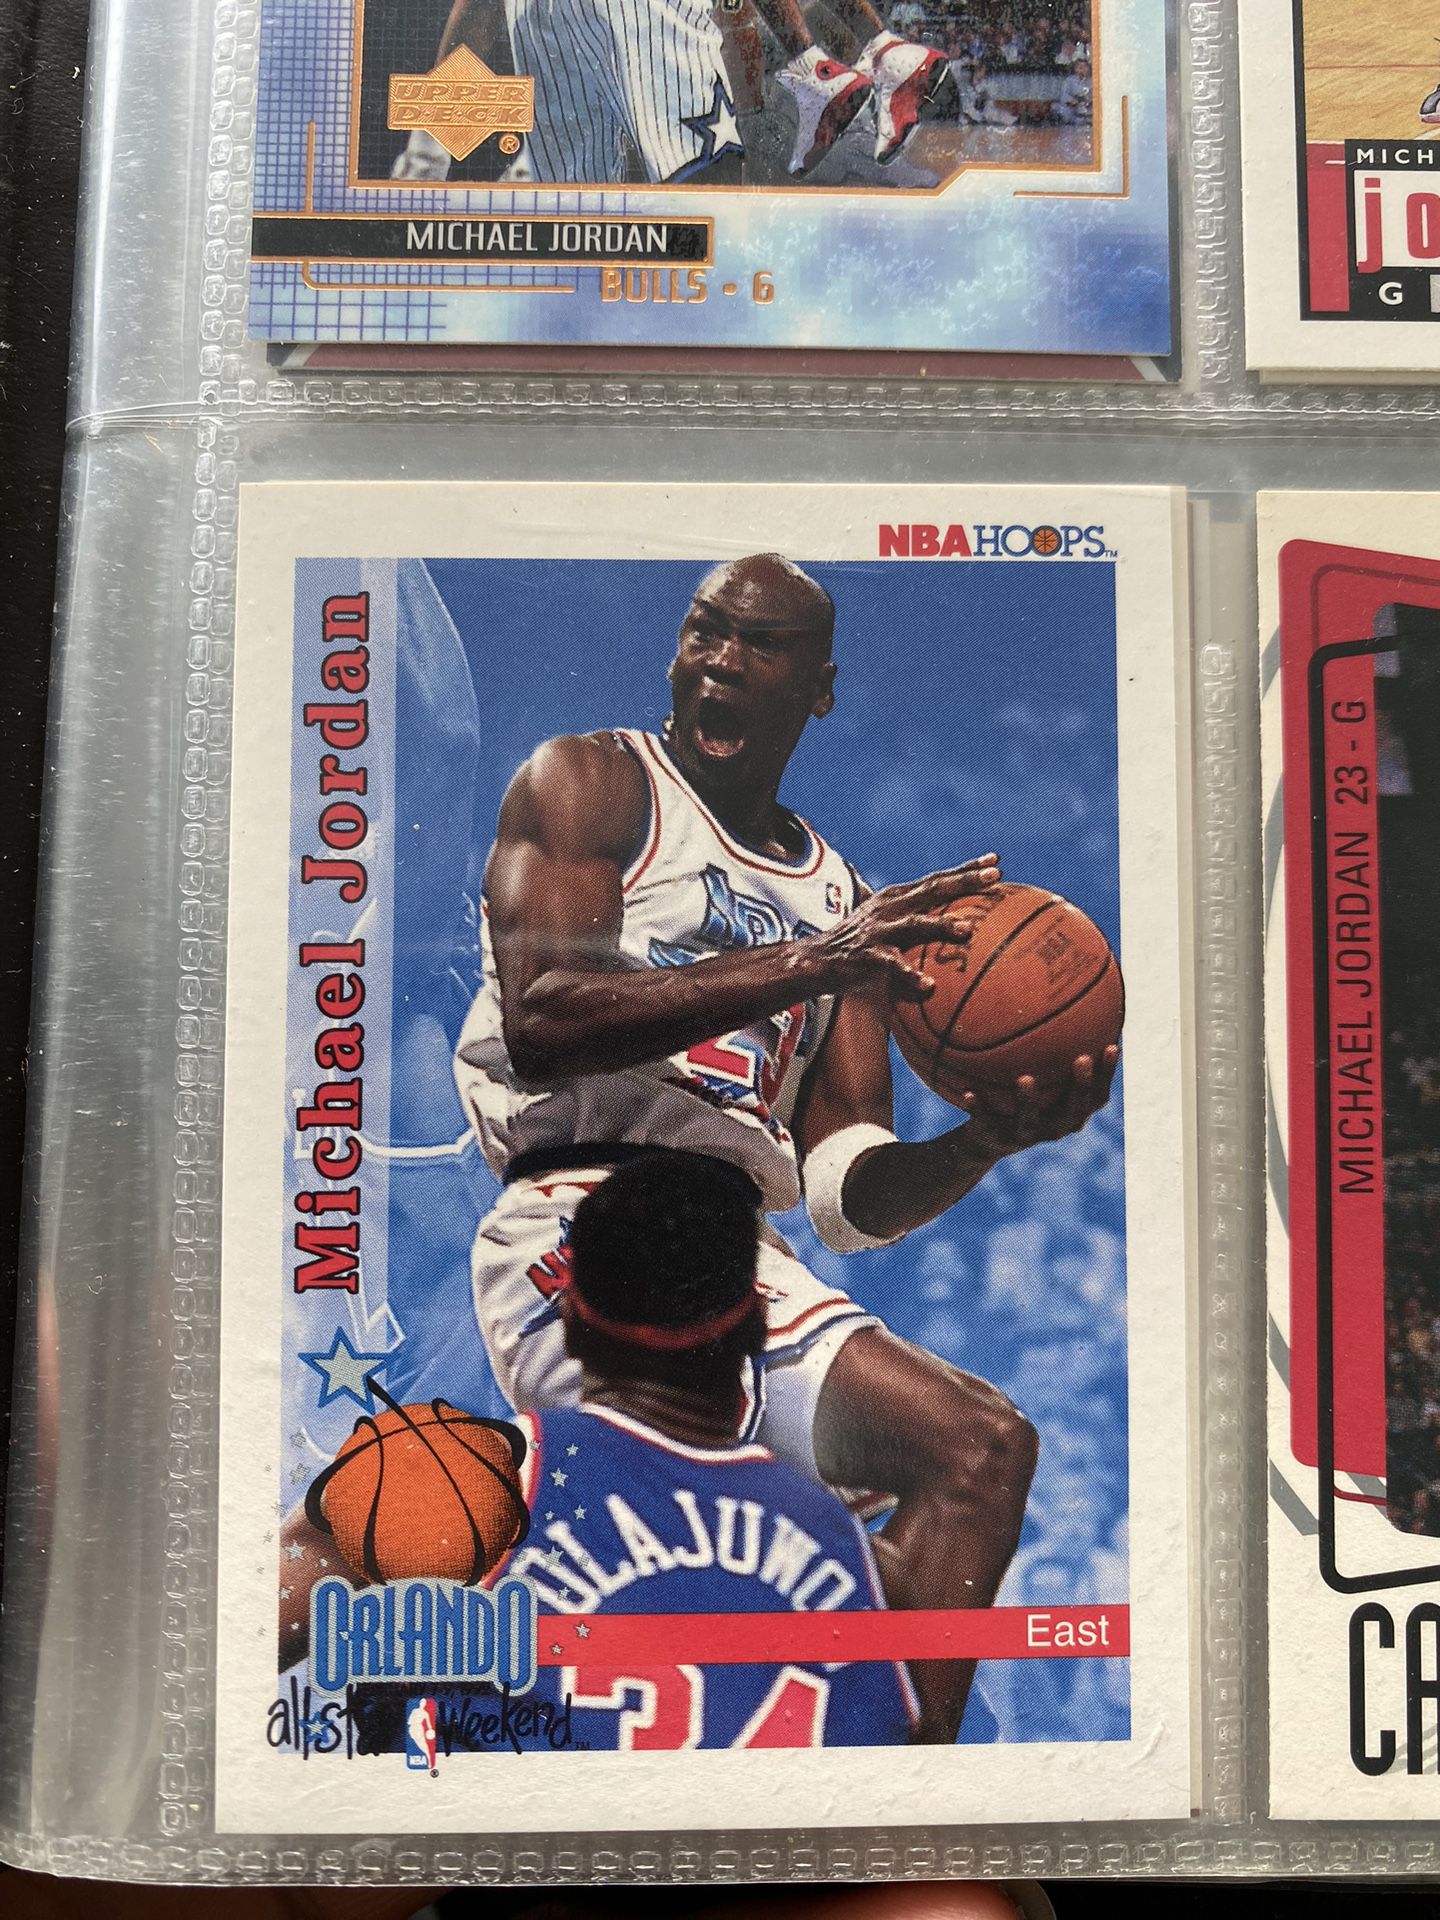 Rare Michael Jordan NBA Hoops All Star East Card